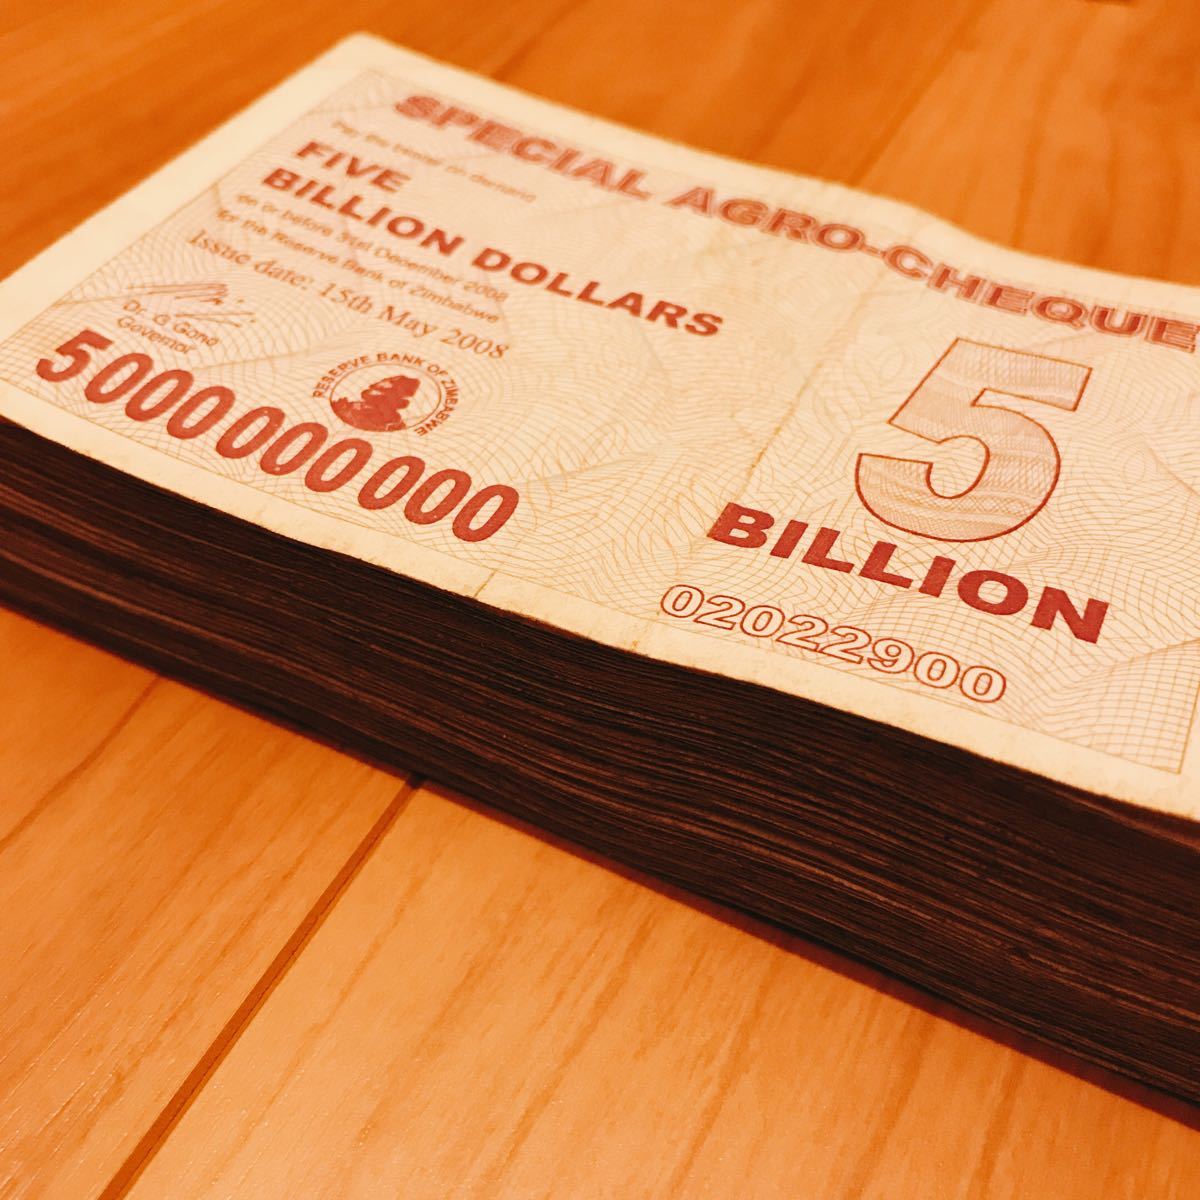 ジンバブエドル ジンバブエ紙幣 5ビリオン 100枚セット 札束 50億ドル-